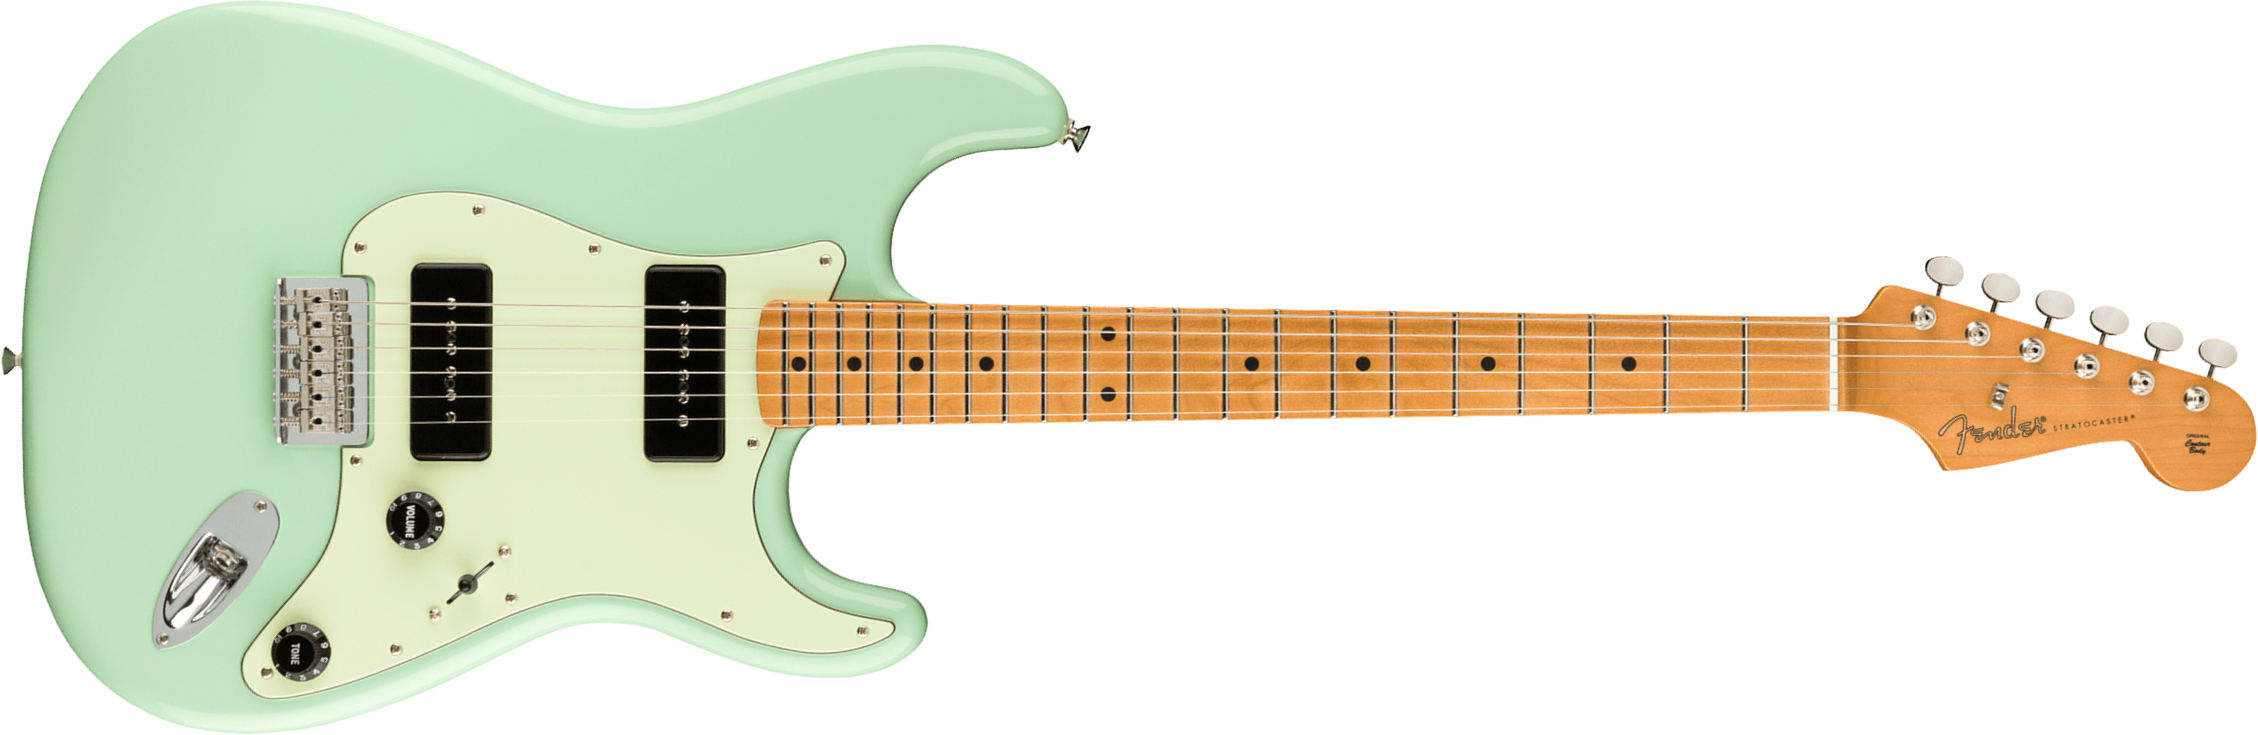 Fender Strat Noventa Mex Ss Ht Mn +housse - Surf Green - Elektrische gitaar in Str-vorm - Main picture